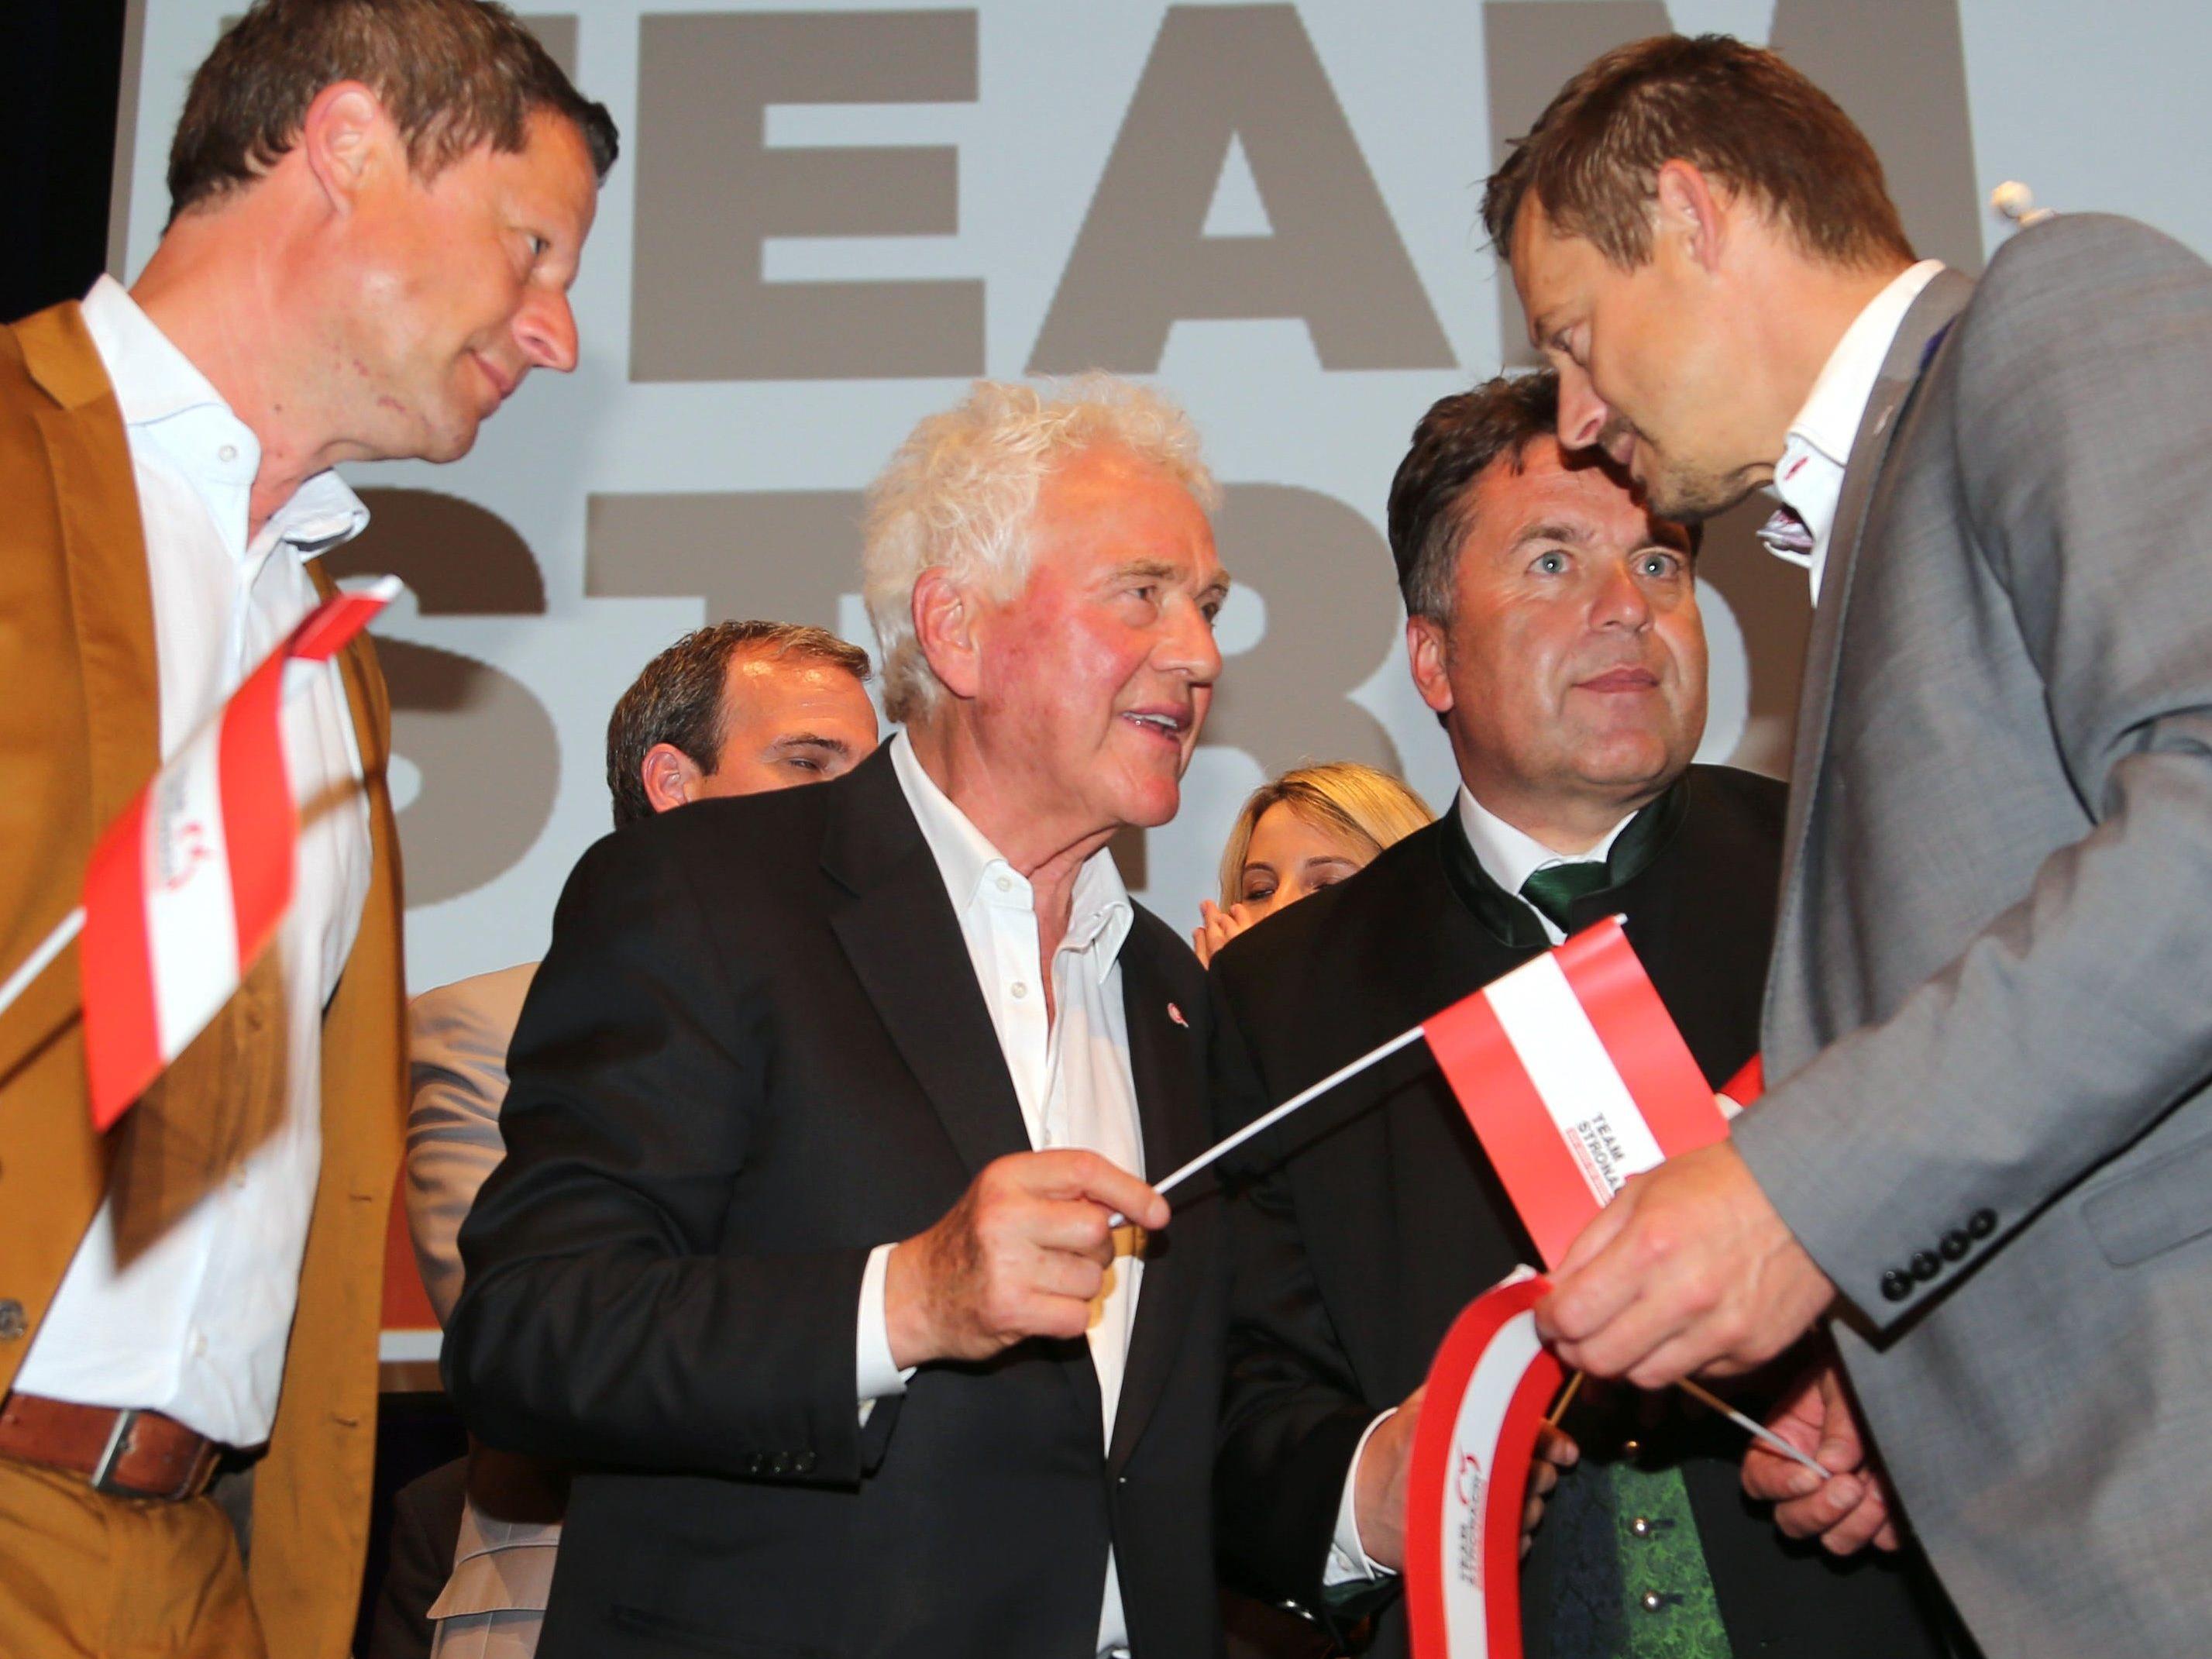 Da war die Stronach-Welt noch heil: Naderer, Stronach, Mayr und Konrad beim Wahlkampf-Abschluss zur Salzburg-Wahl 2013.